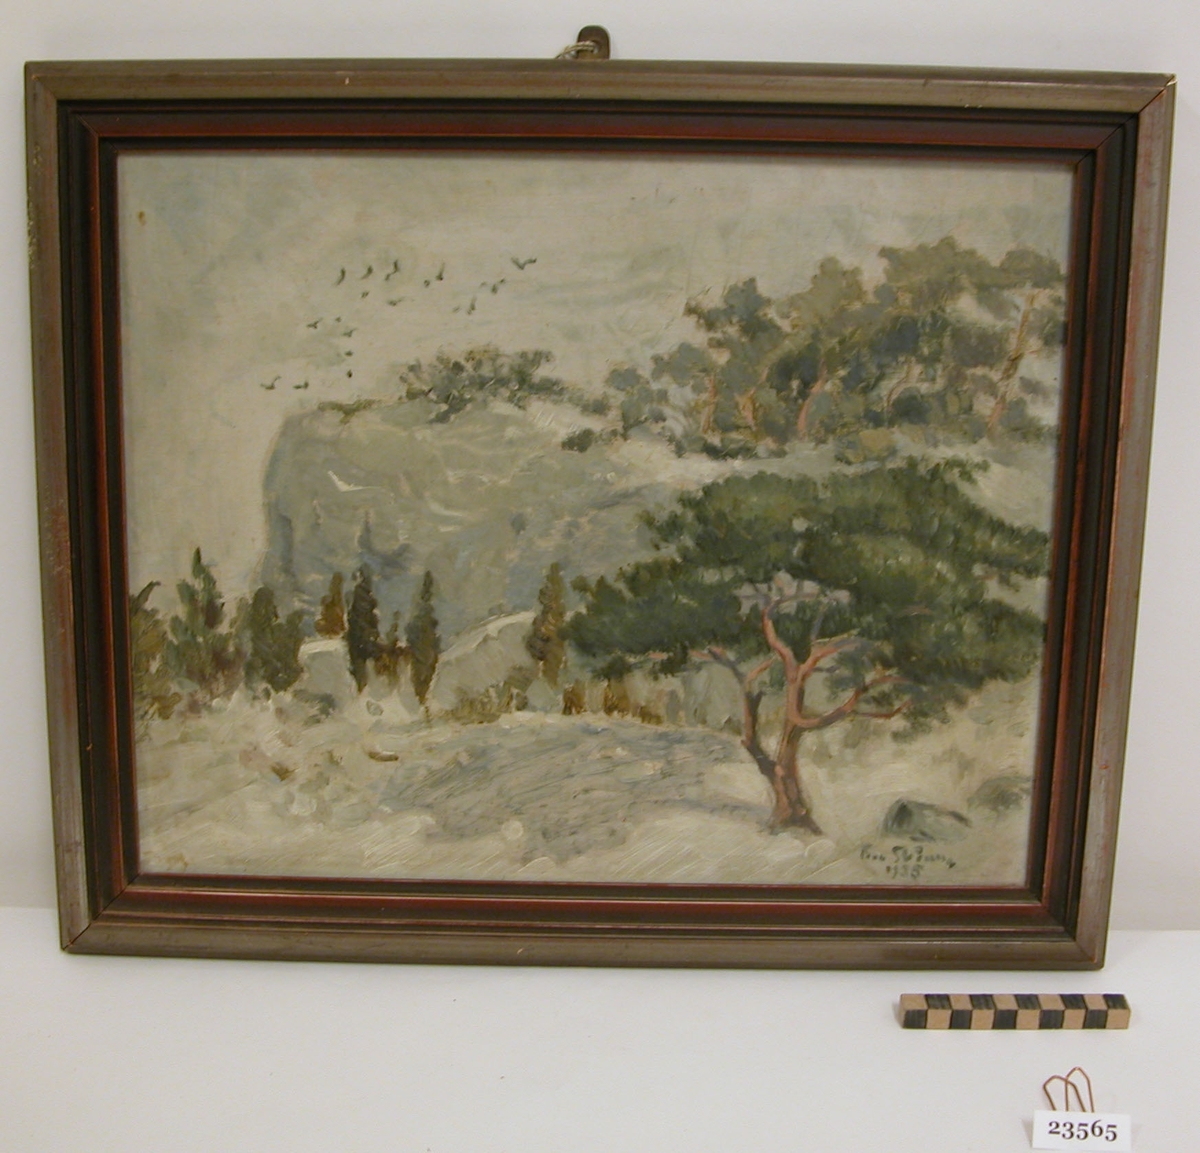 Målning i grå, brun, gröna toner. I bakgrunden till vänster, ett berg med fåglar flygande kring, i förgrunden tallar och enar.
Nere till höger signatur: F.... Skå..... 1935.

På baksidan påskrift: Gotland SSS 226 Kråkberget